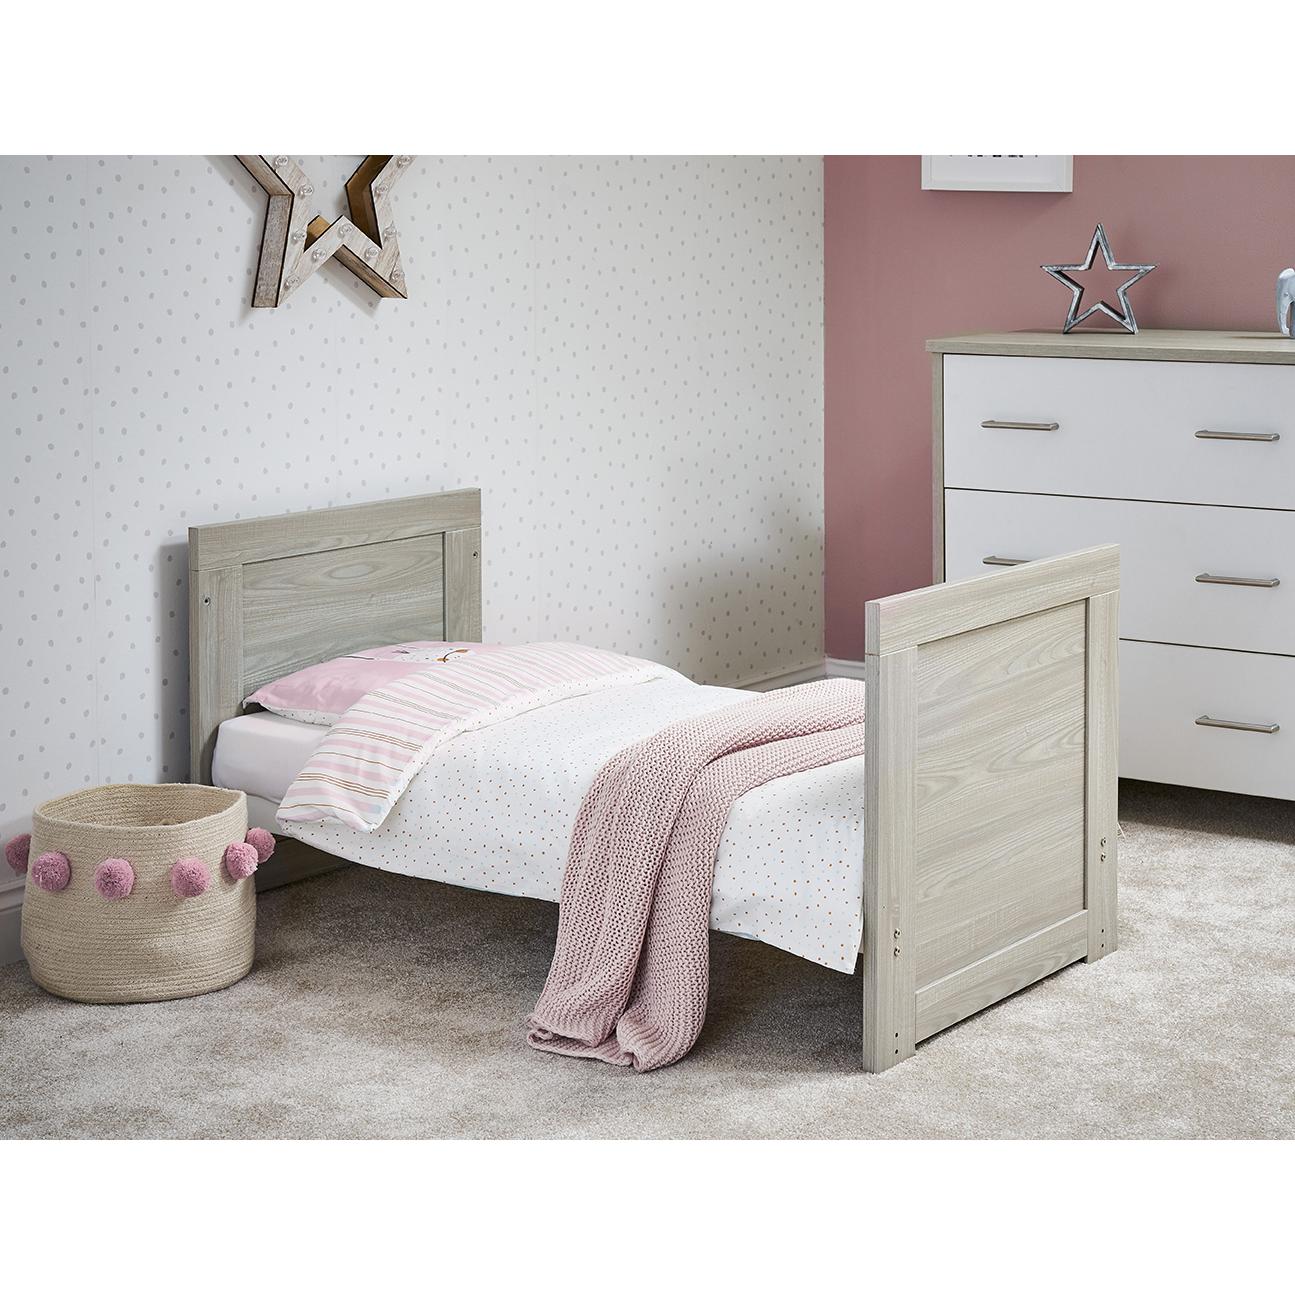 Nika Mini Cot Bed - Grey Wash & White